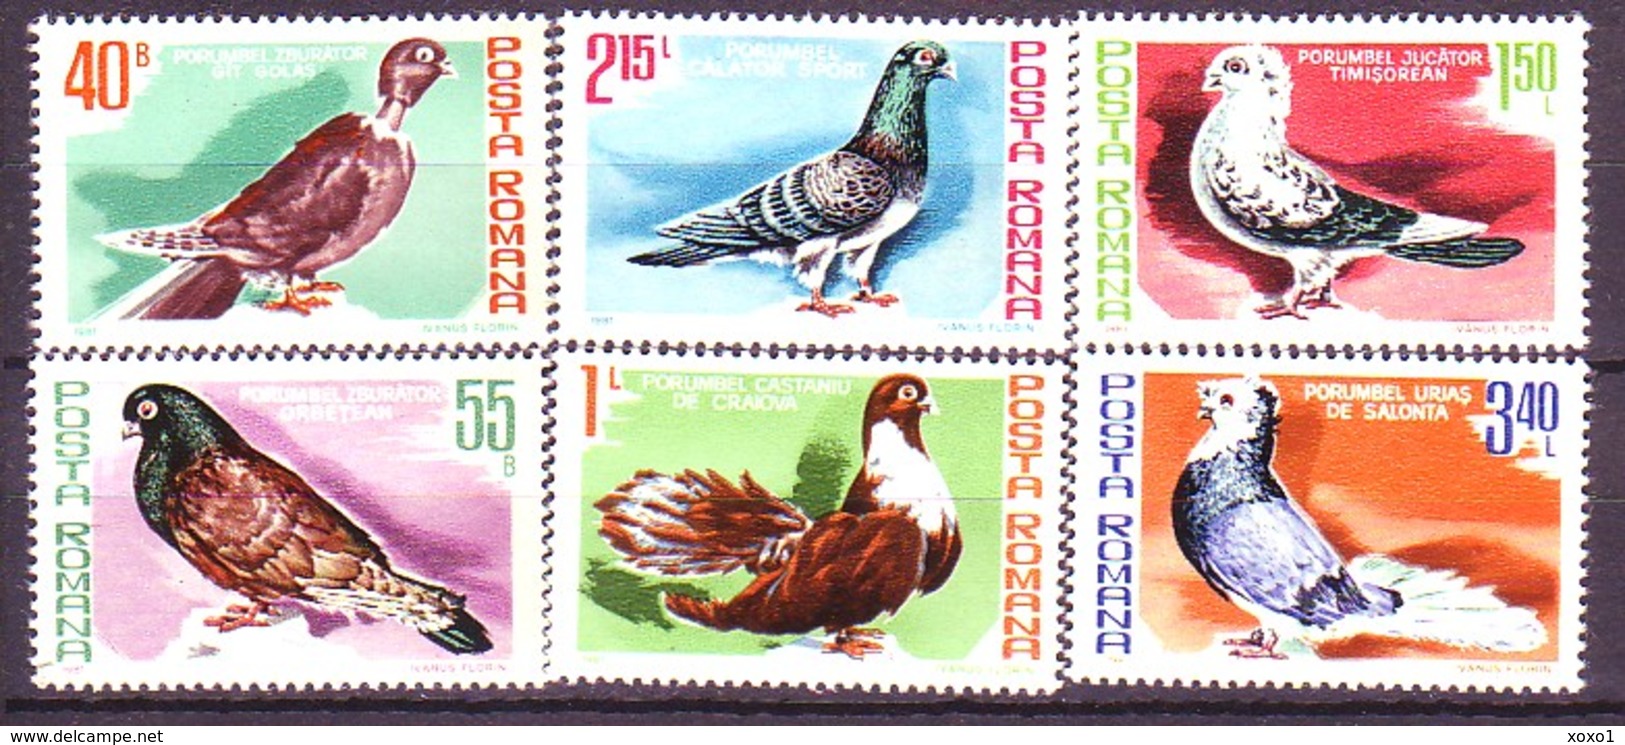 Romania 1981 Birds Vogel Breeds Of Pigeons 6v MNH** 2,50 € - Tauben & Flughühner